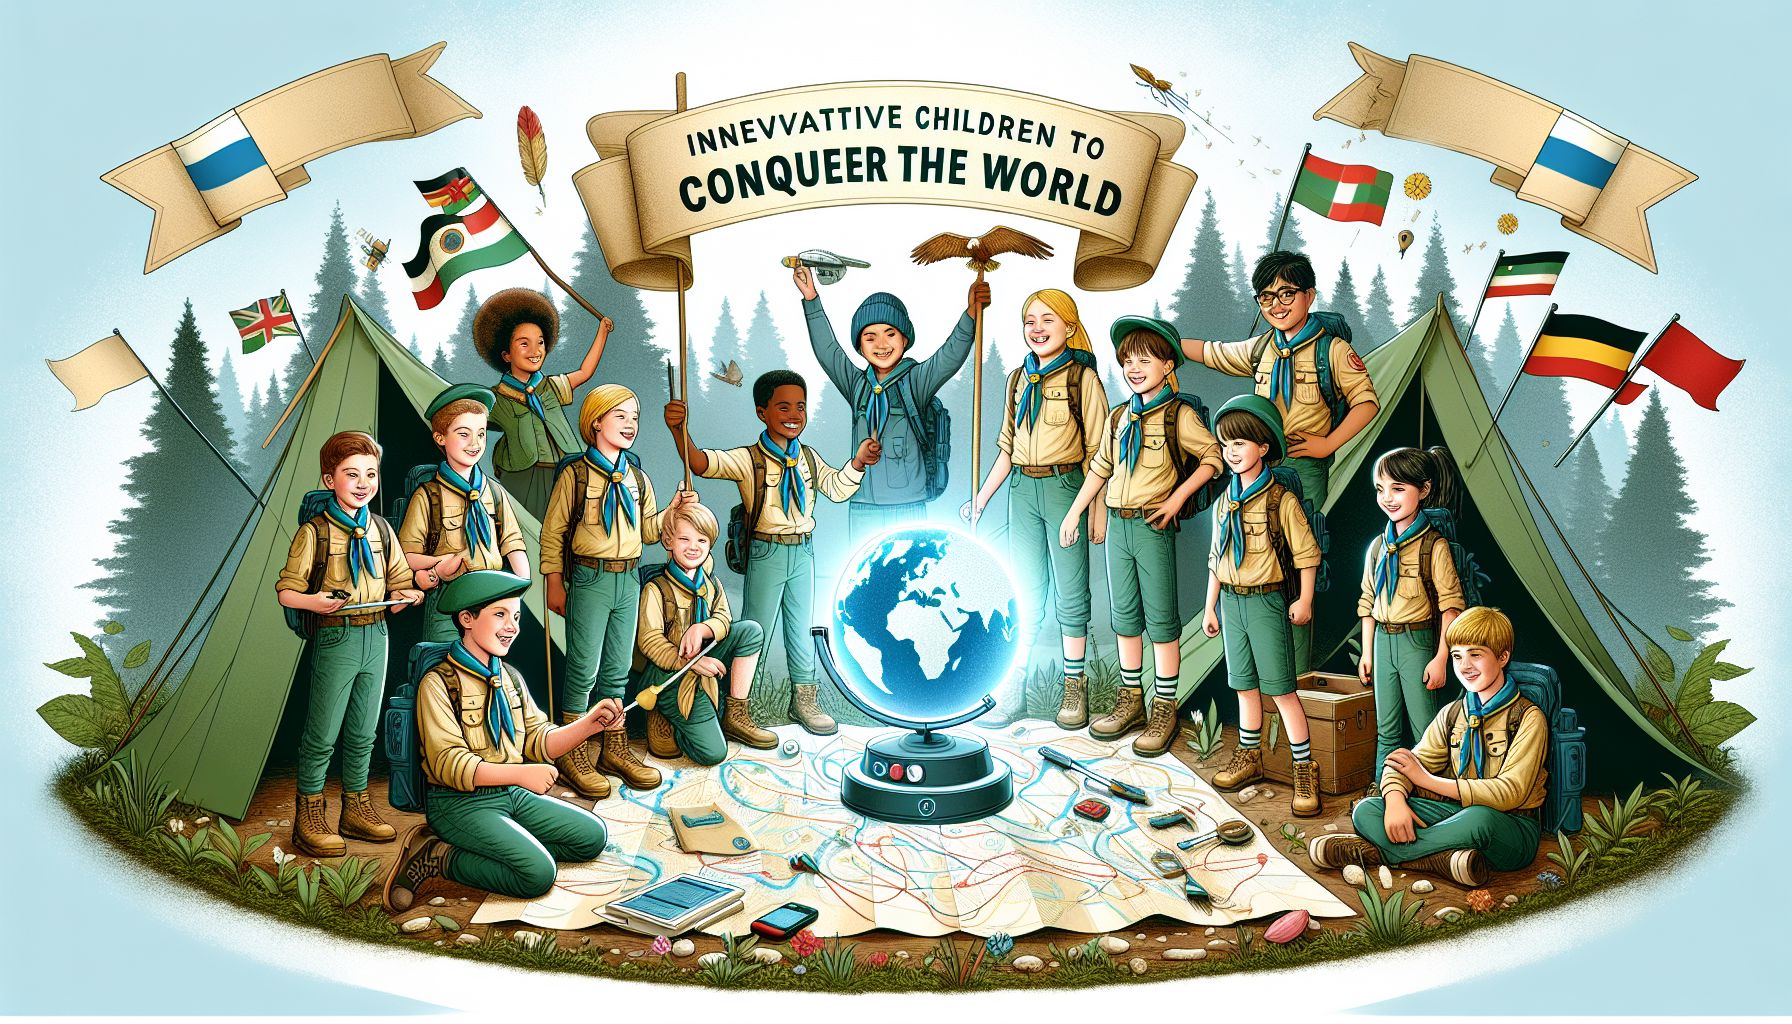 #Lasten partiotoiminta – Uudenlainen harrastus valmiina valloittamaan maailmaa